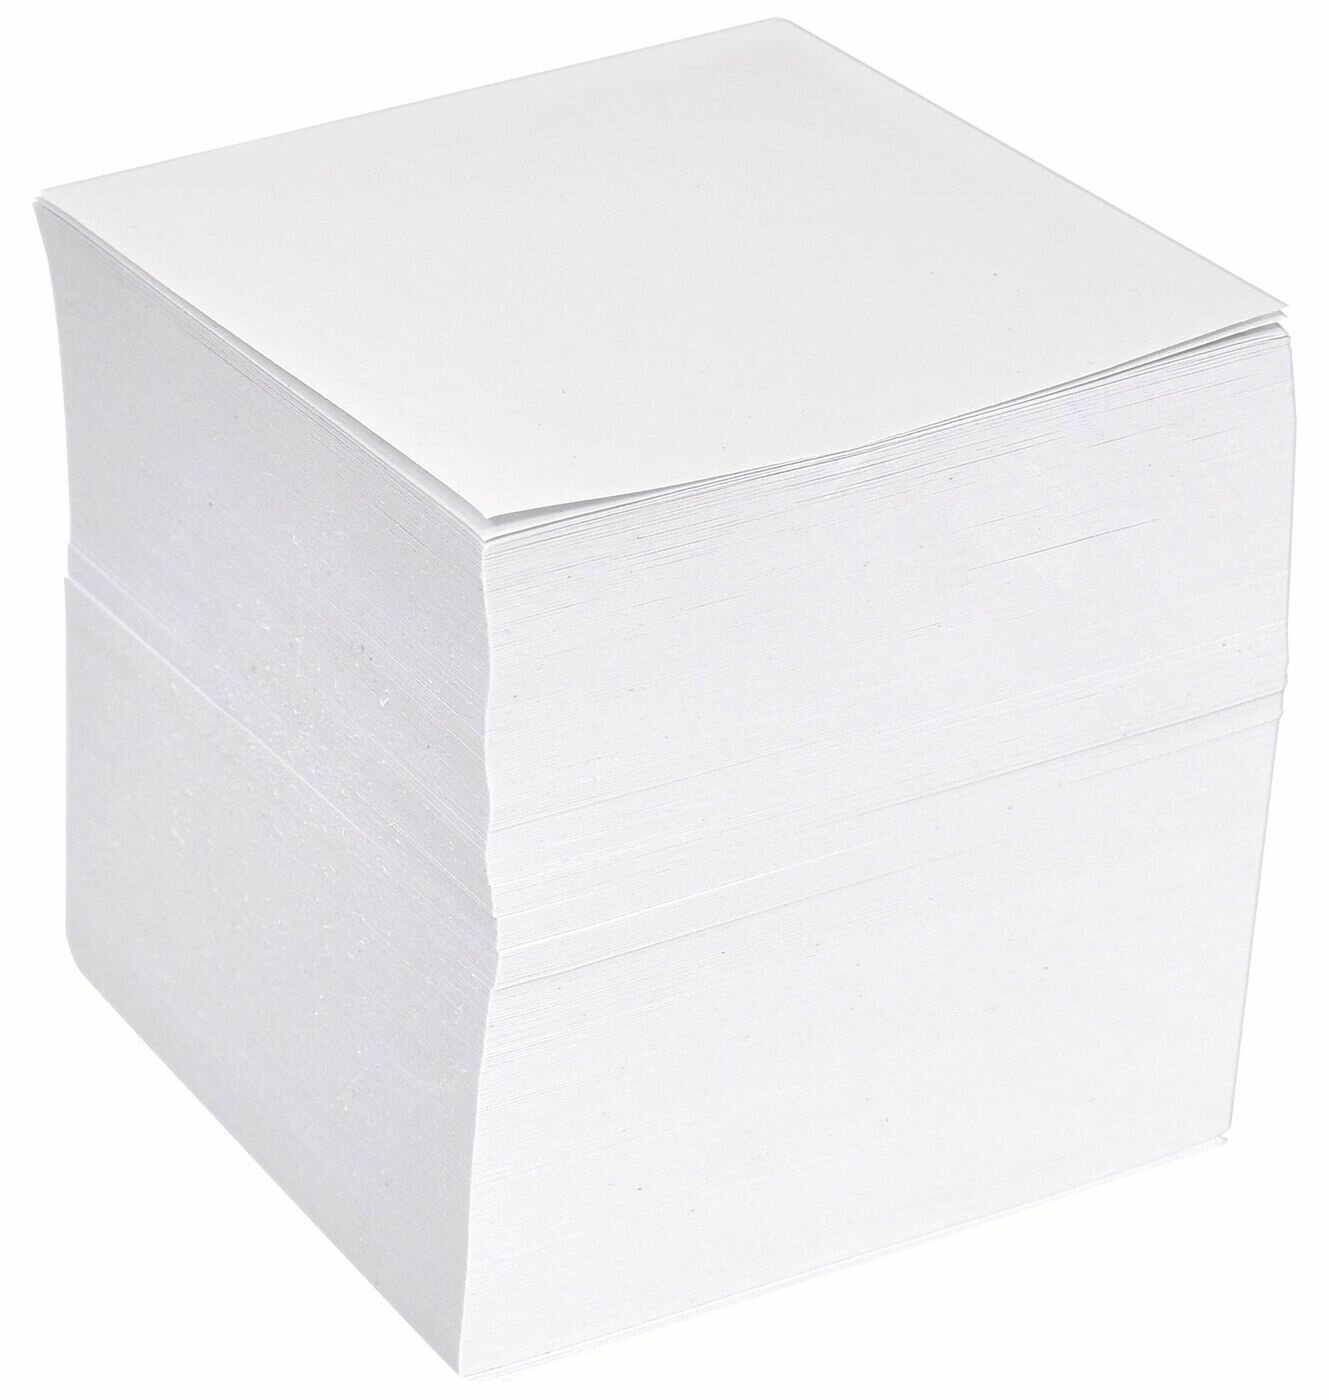 Блок для записей Informat 9х9х9 см Куб проклееннный белый 1 цв. 80 г/м2 белизна 94%-100%